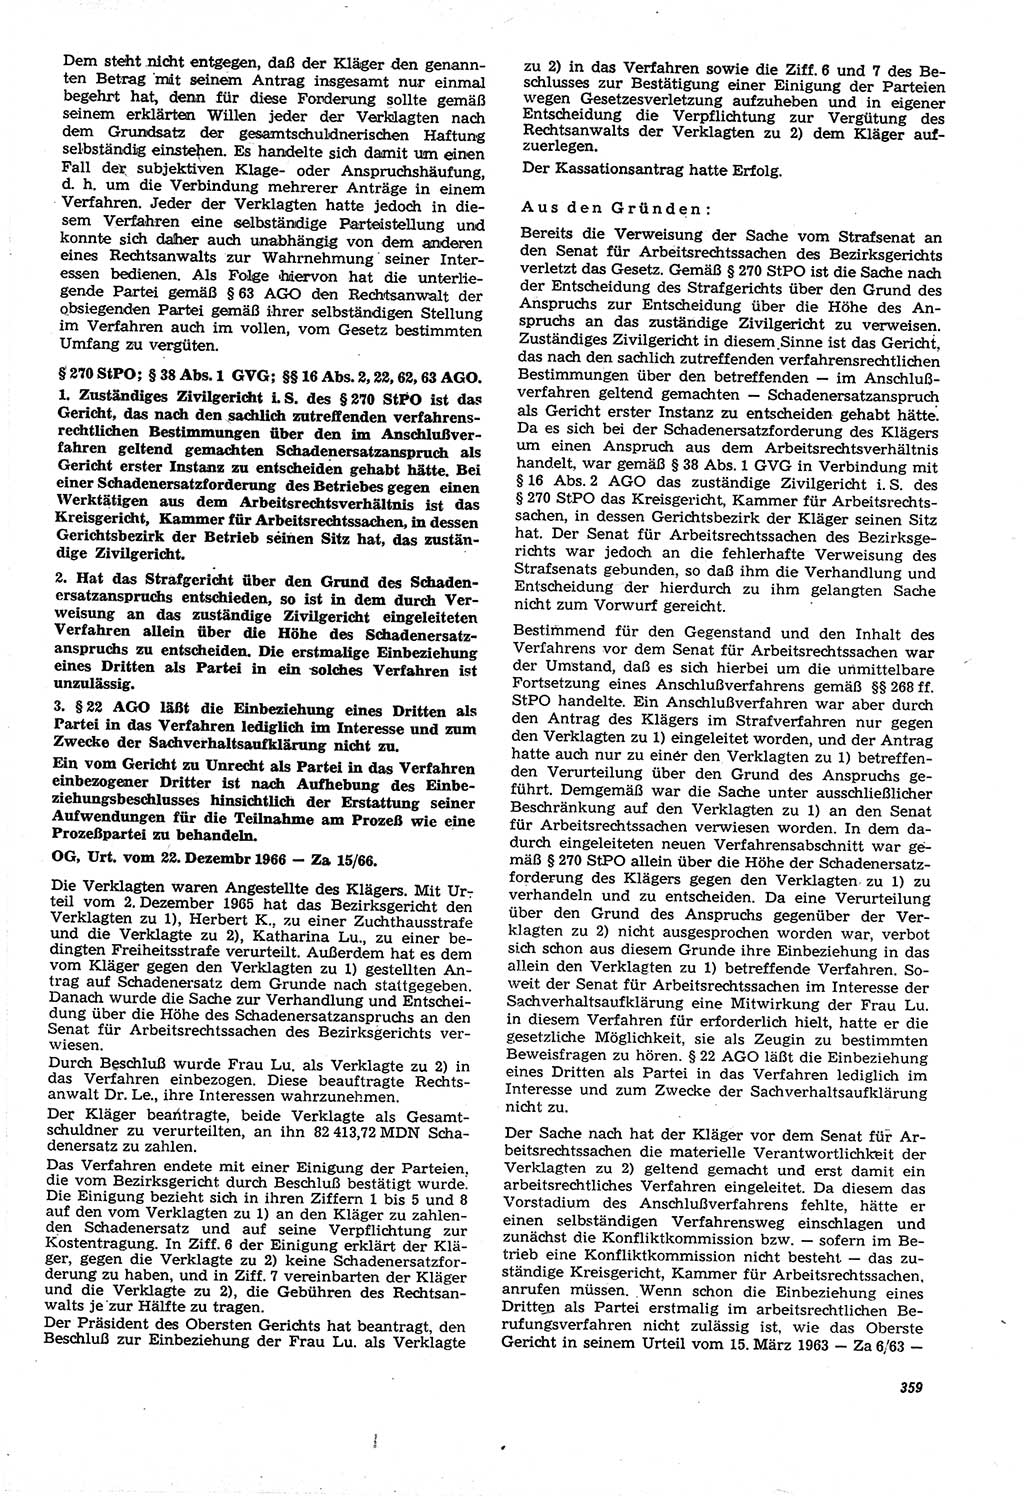 Neue Justiz (NJ), Zeitschrift für Recht und Rechtswissenschaft [Deutsche Demokratische Republik (DDR)], 21. Jahrgang 1967, Seite 359 (NJ DDR 1967, S. 359)